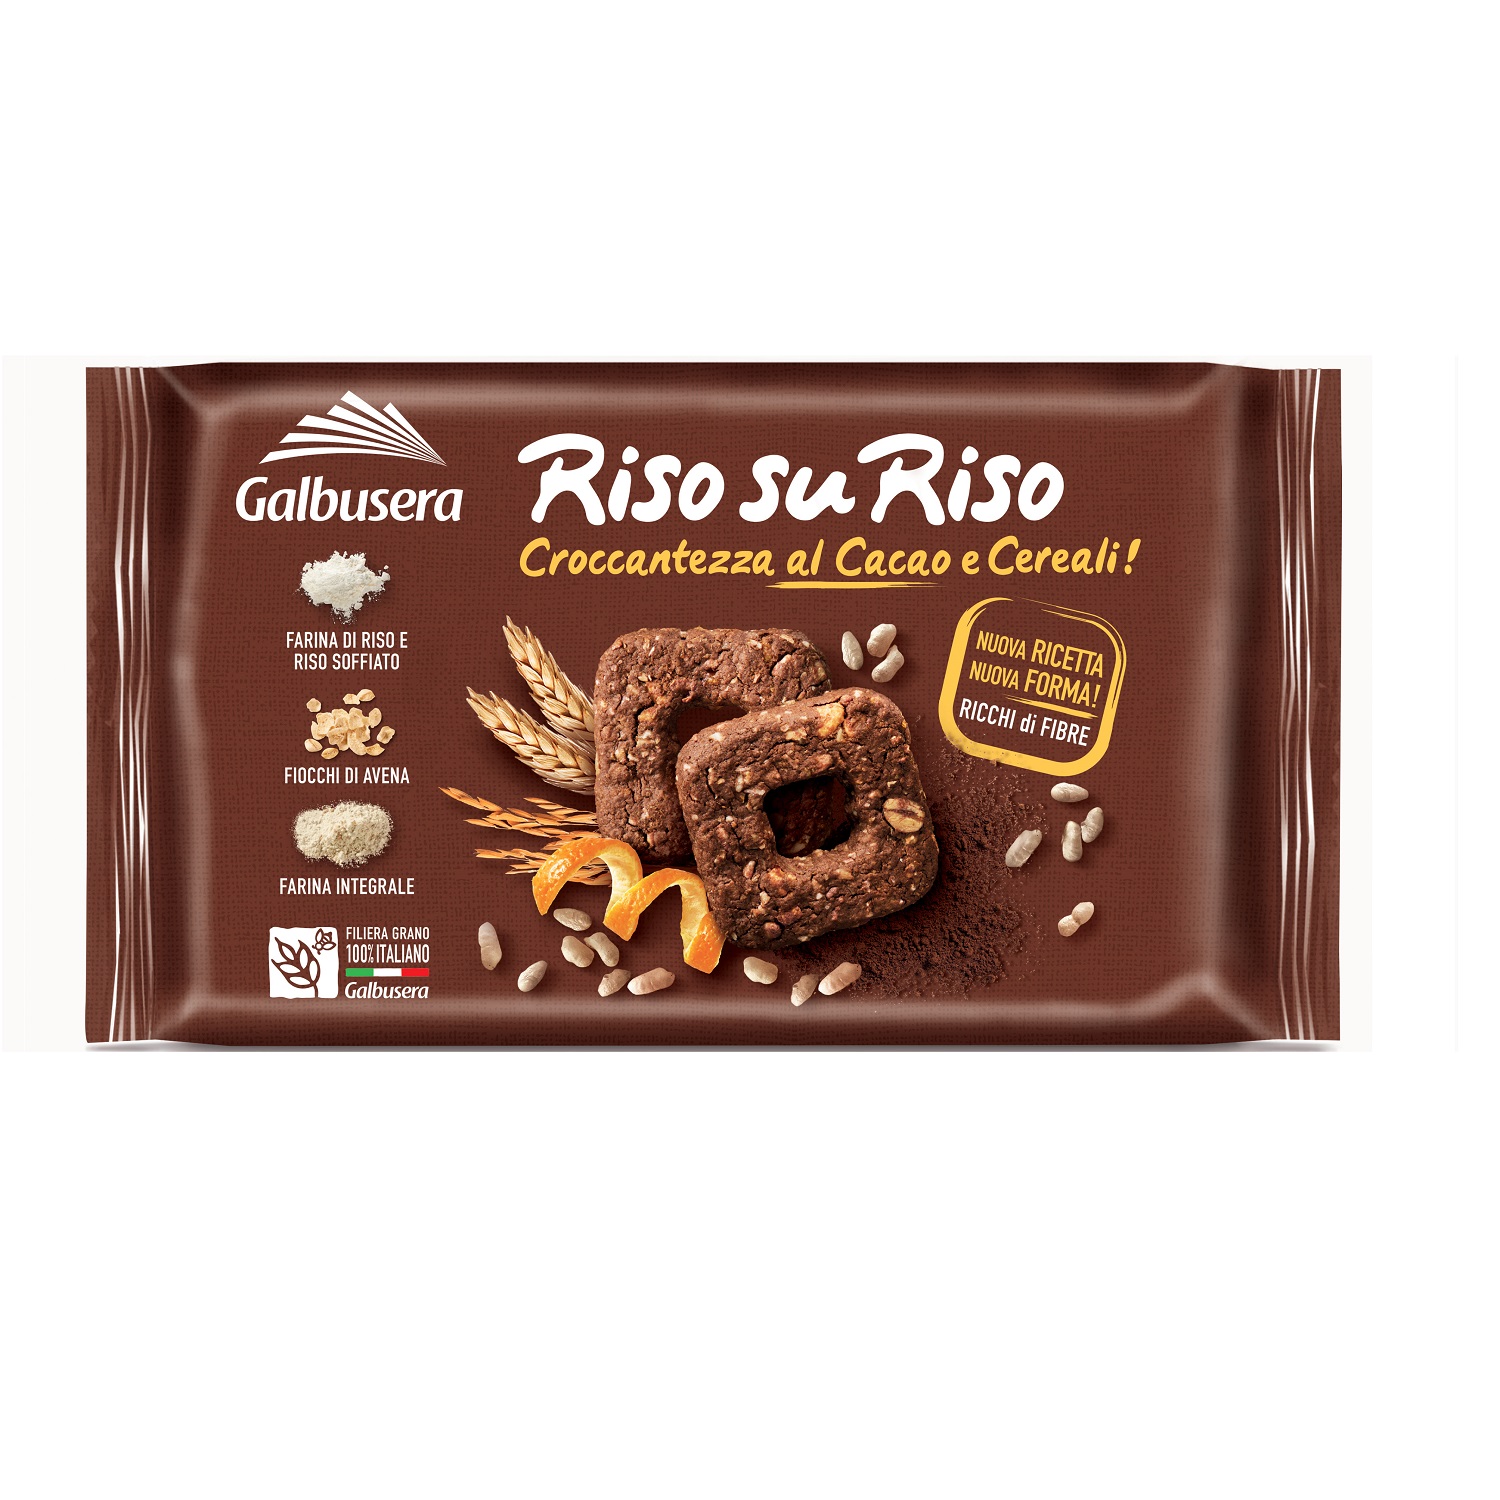 Biscuiti cu cacao si cereale Riso su Riso, 220 g, Galbusera